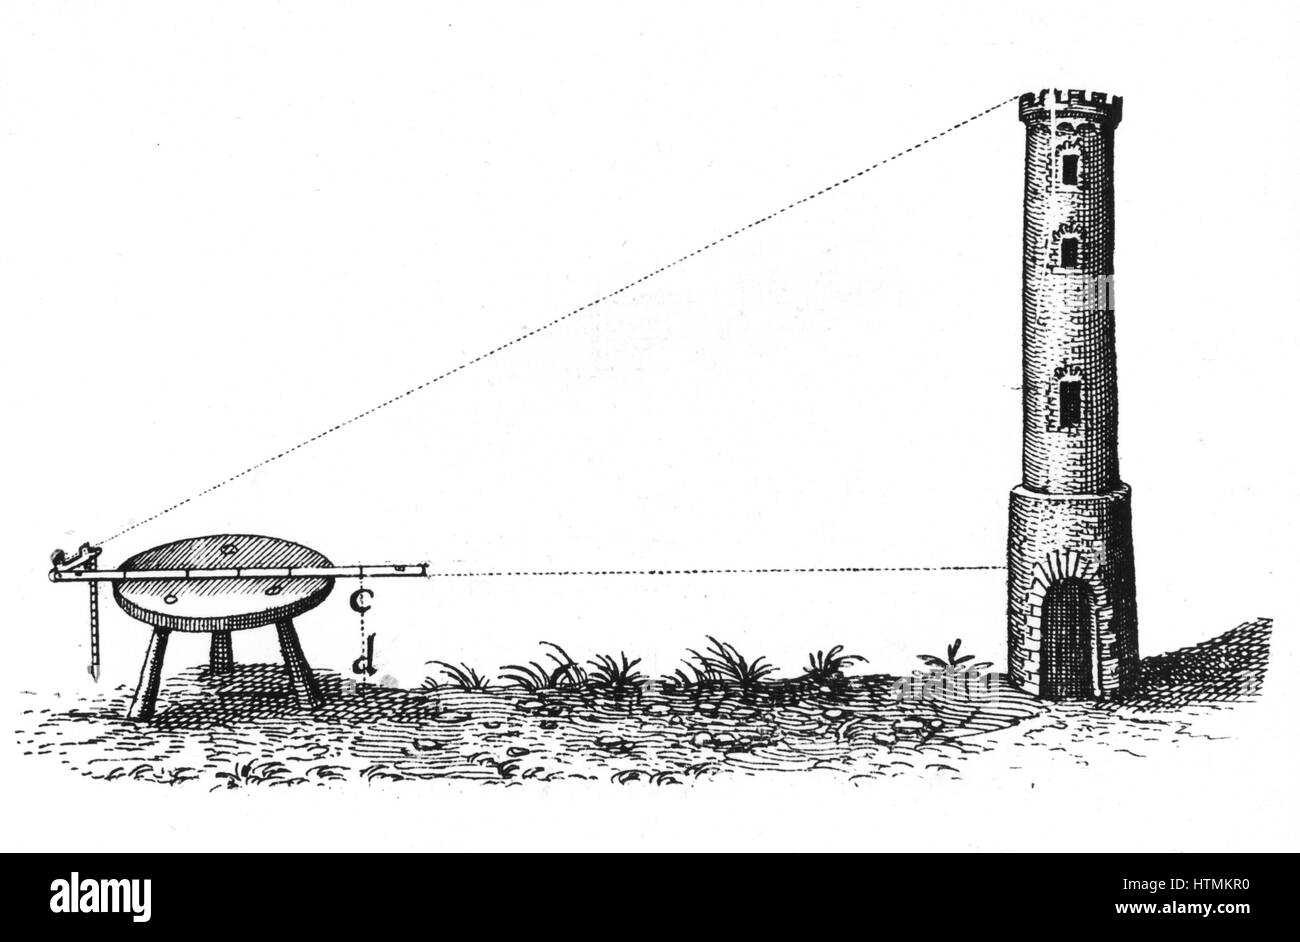 Utilizzando un piano tavolo e personale a cerniera per misurare l'altezza di una torre. Da Robert Fludd 'Utriusque cosmi … historia, Oppenheim, 1617-1619. Incisione Foto Stock